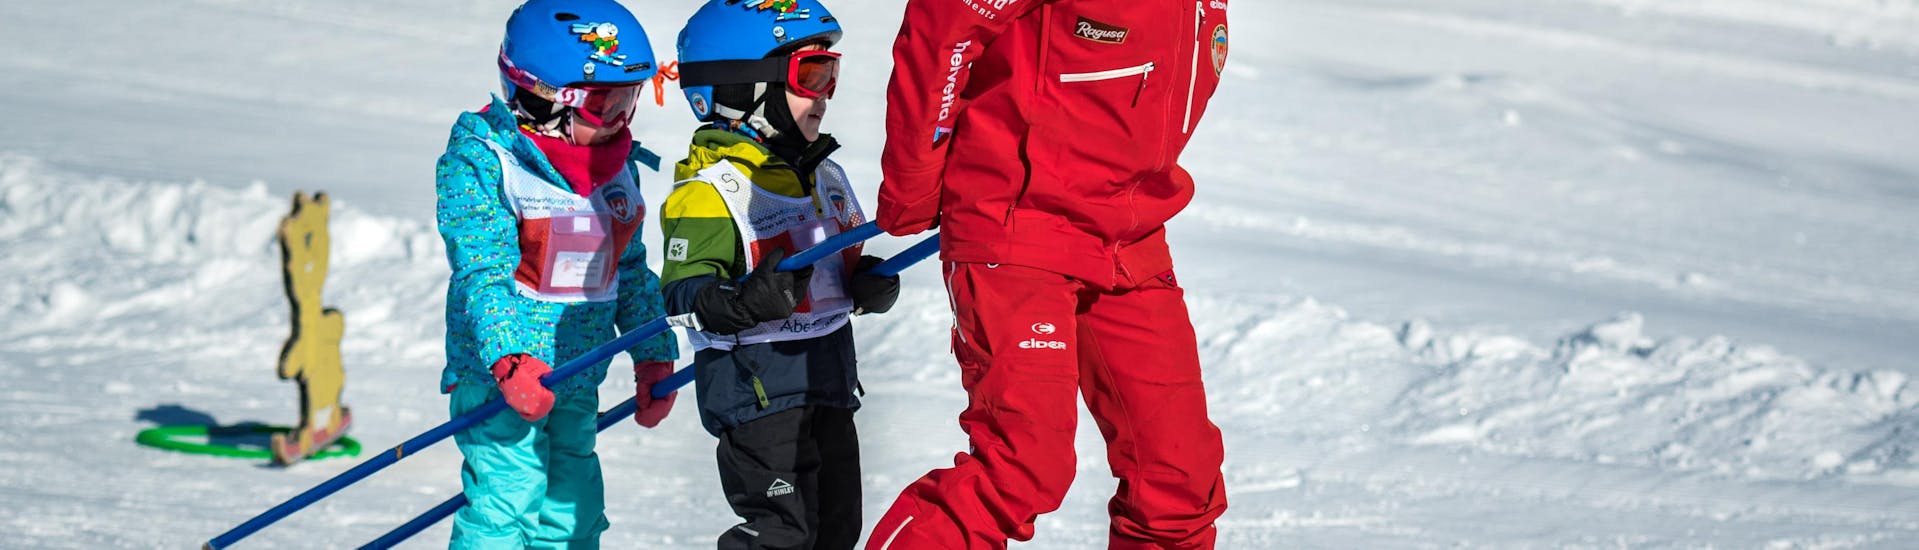 Cours particulier de ski Enfants (3-15 ans).